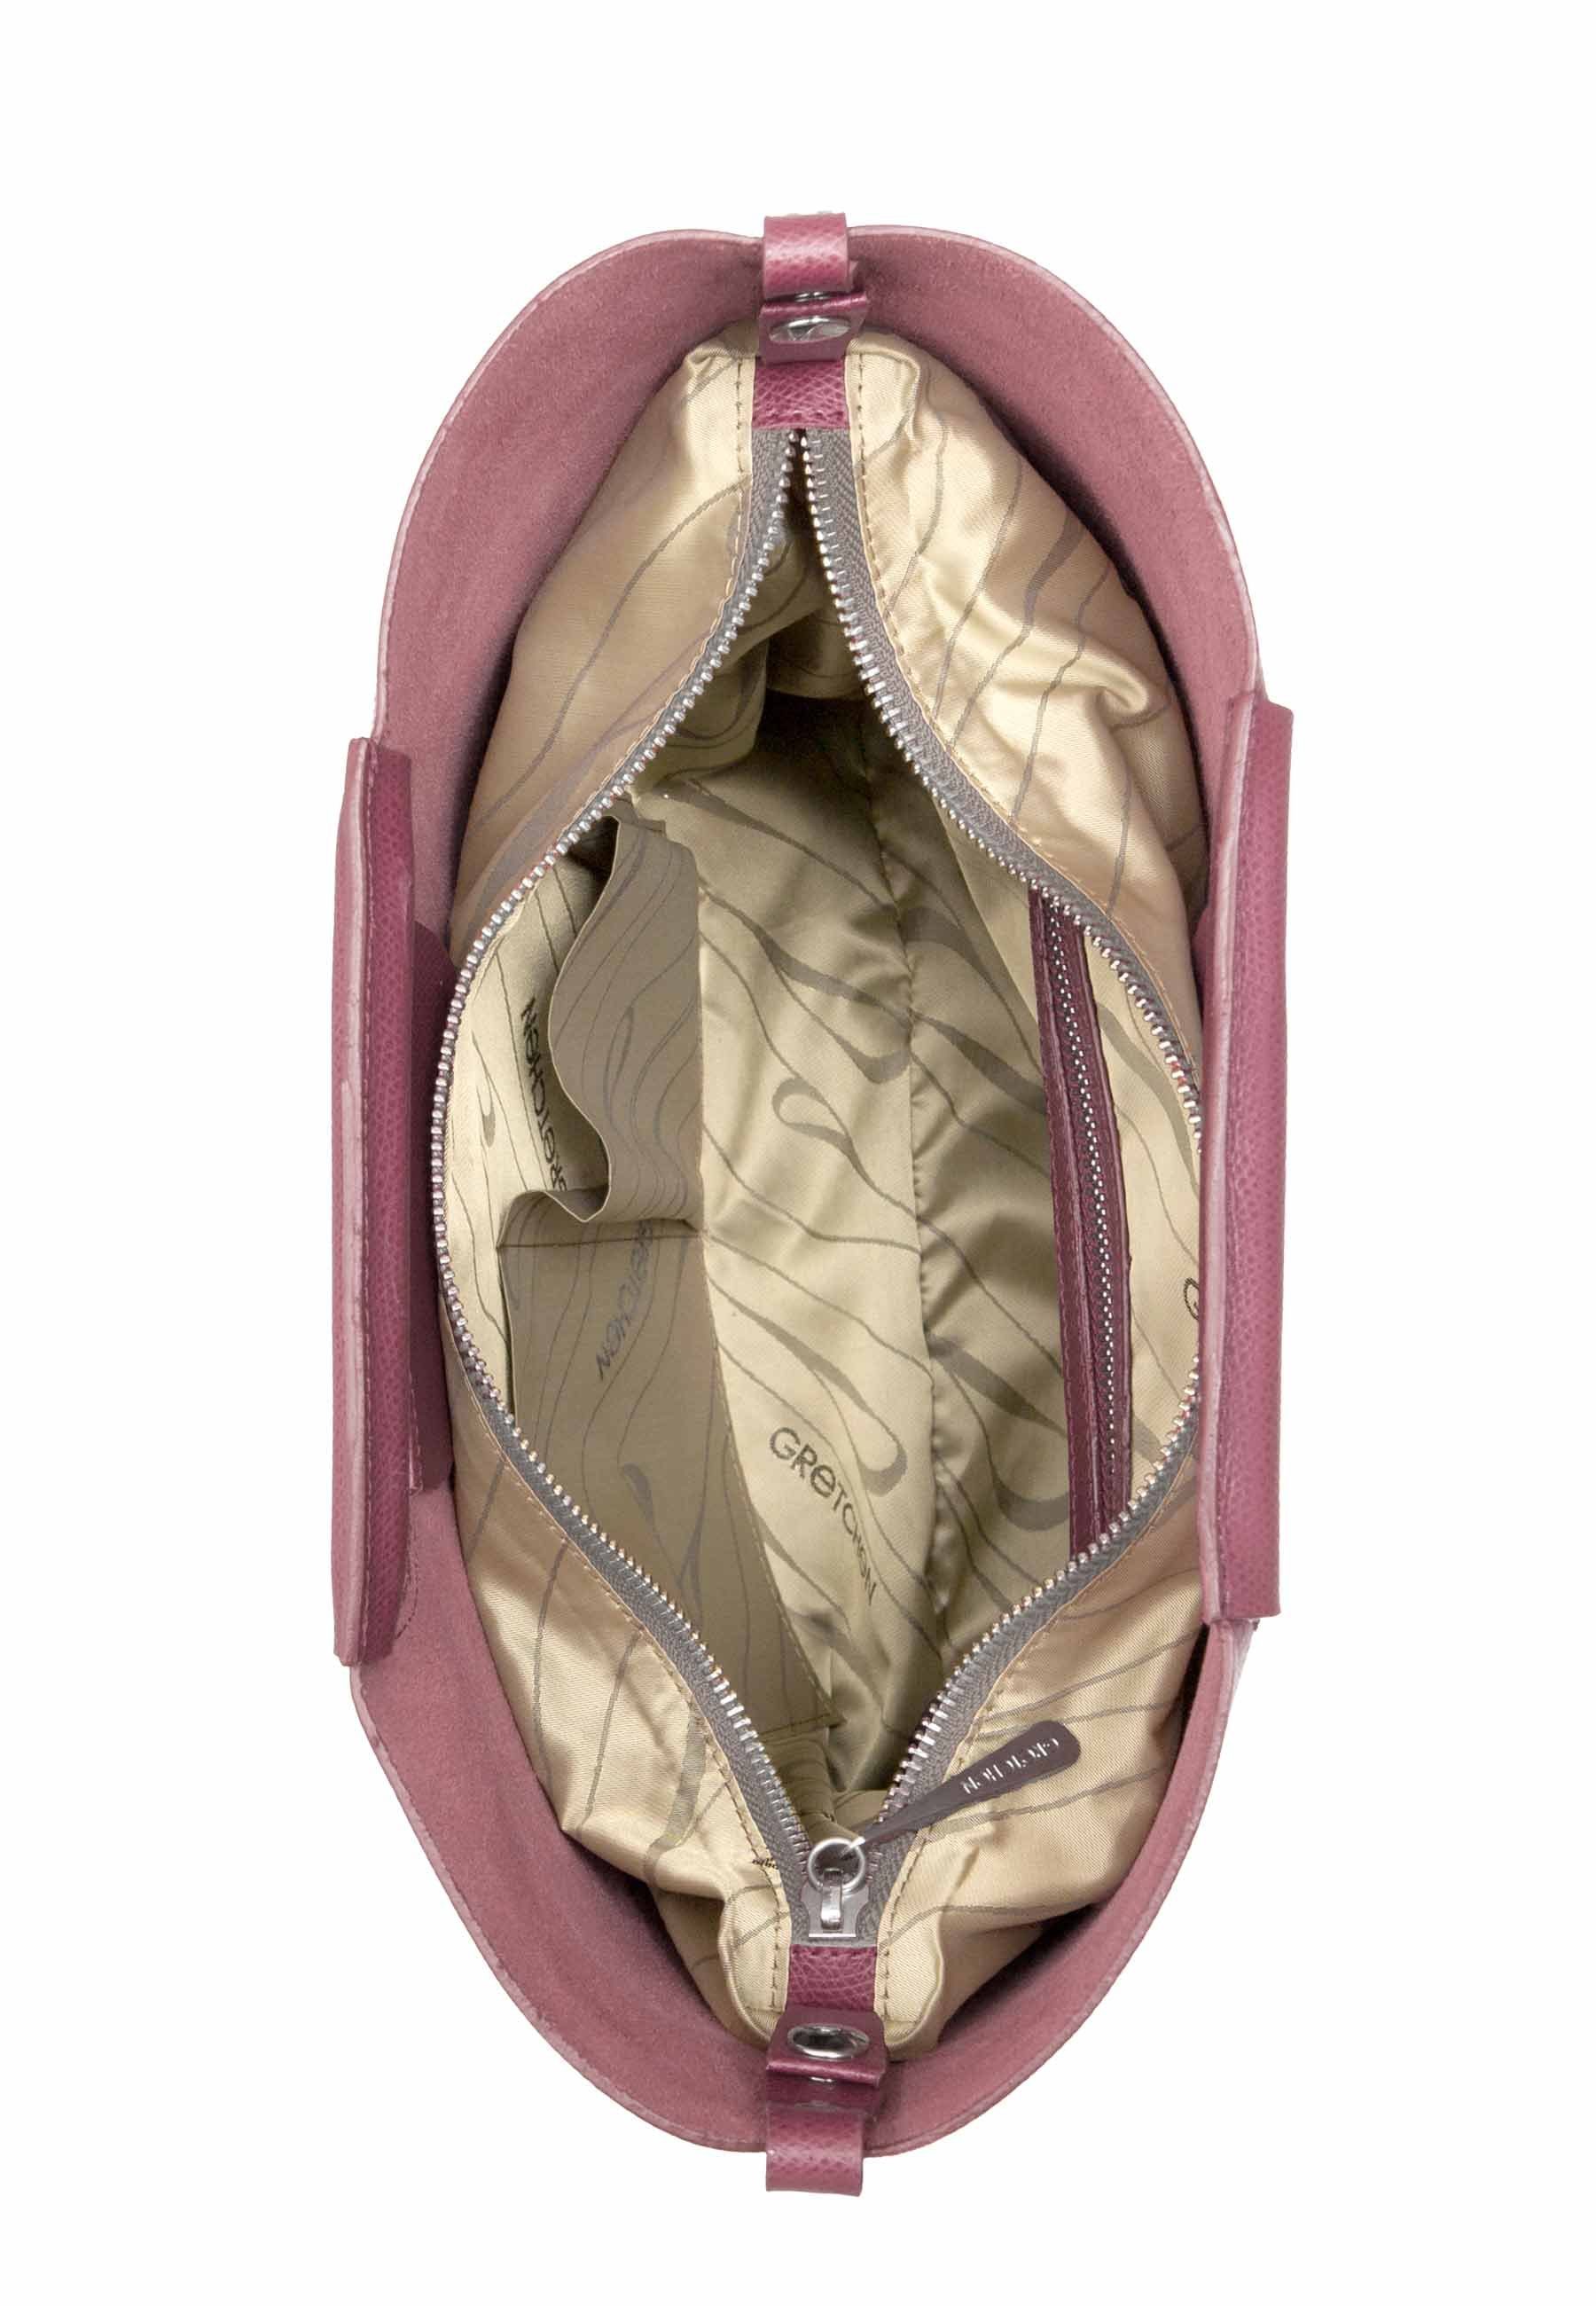 GRETCHEN Schultertasche Crocus Shoulderbag, aus rosa italienischem Rindsleder